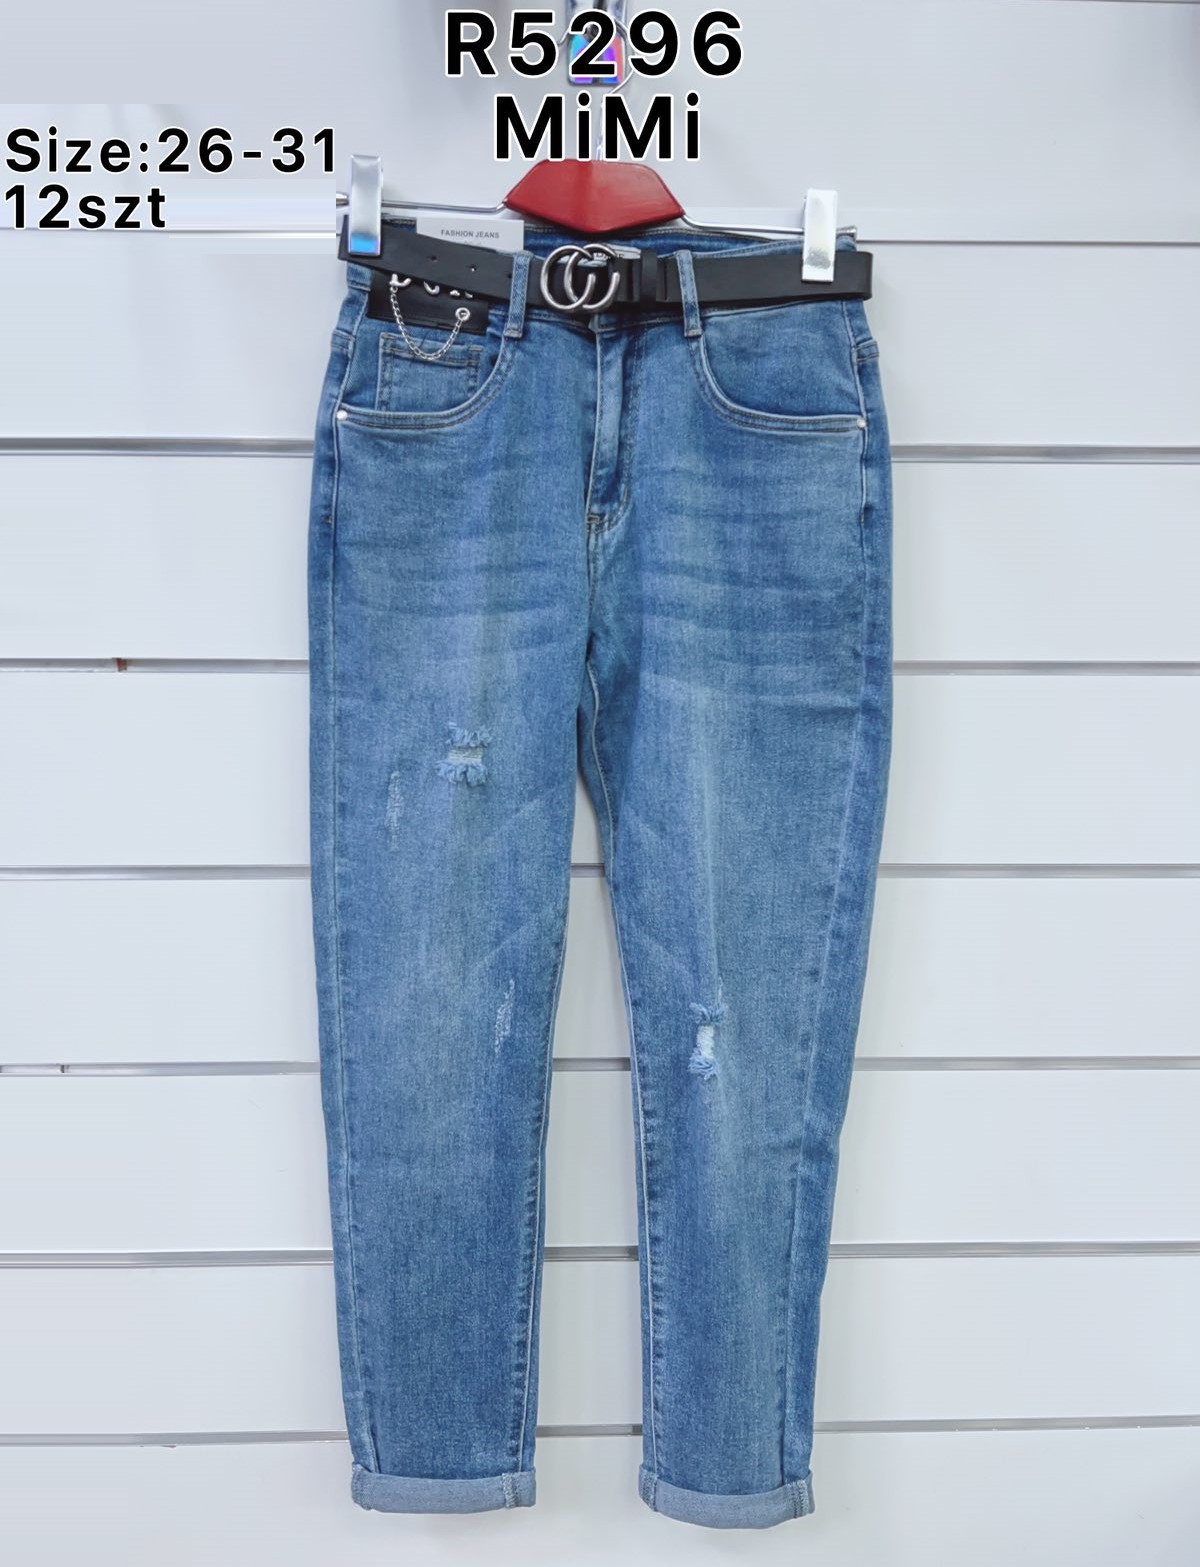 Spodnie  damskie jeans Roz  26-31.  1 kolor . Paczka 12sz.t